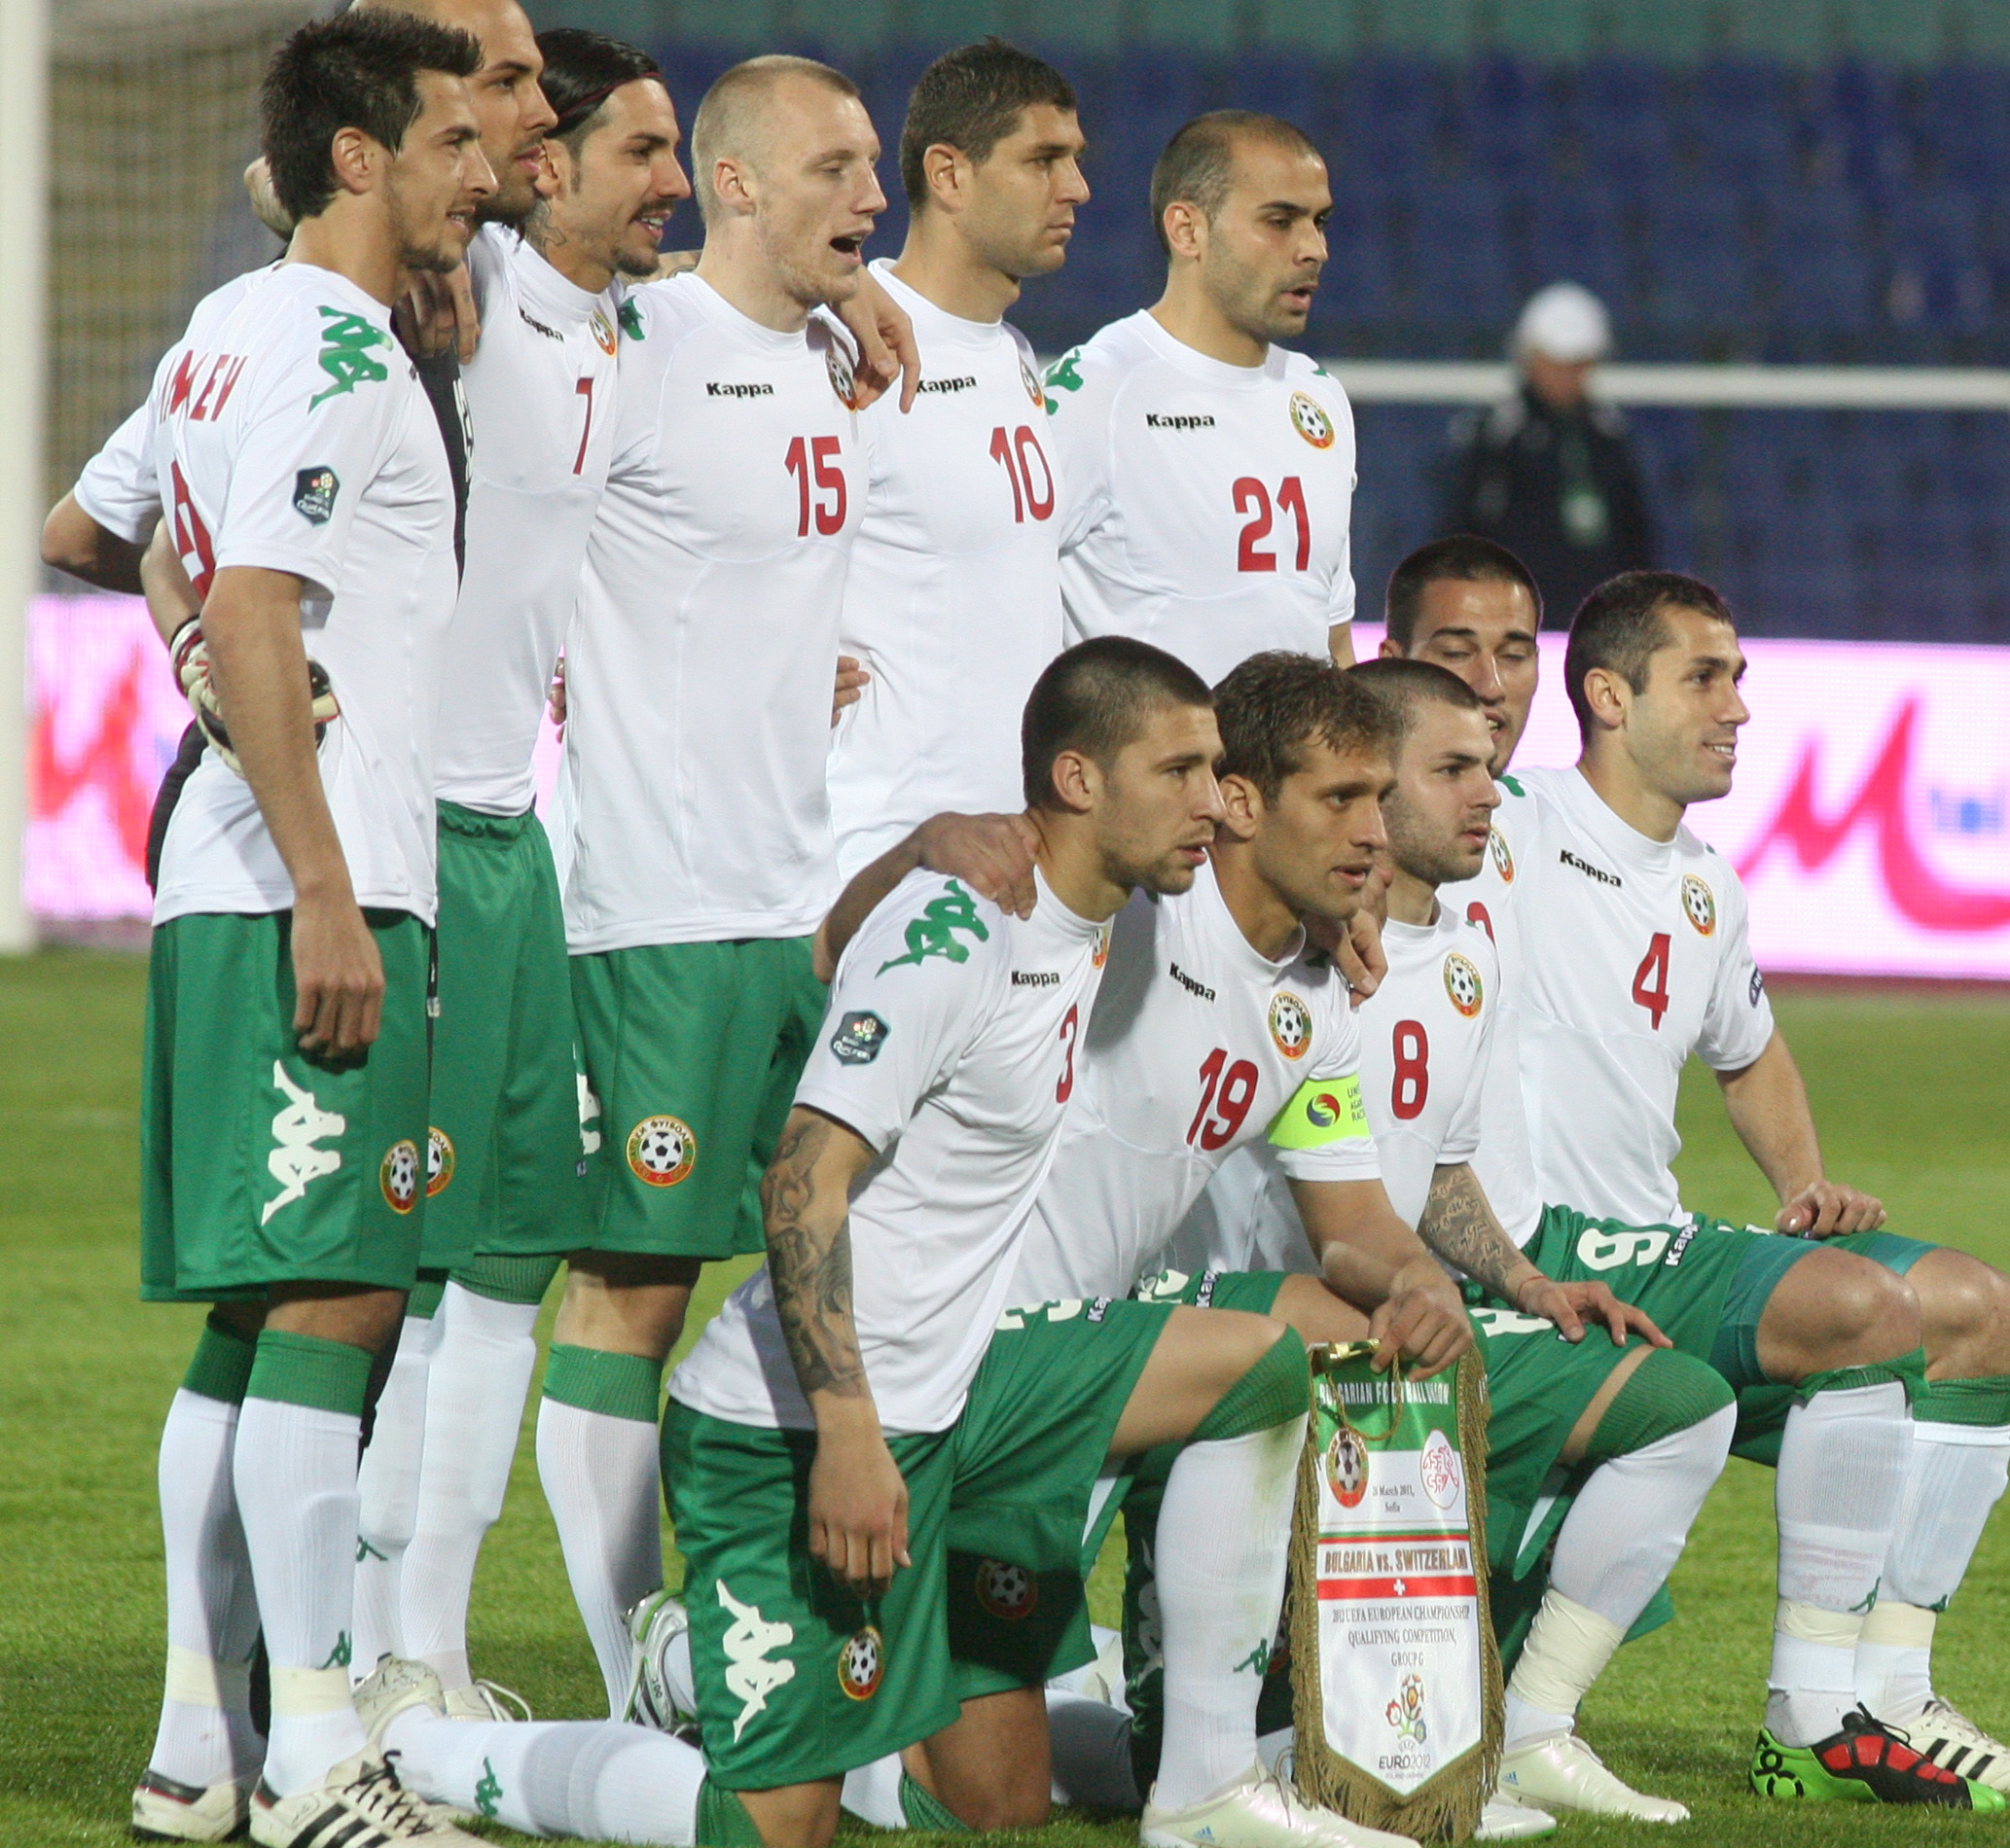 Български национален отбор по футбол